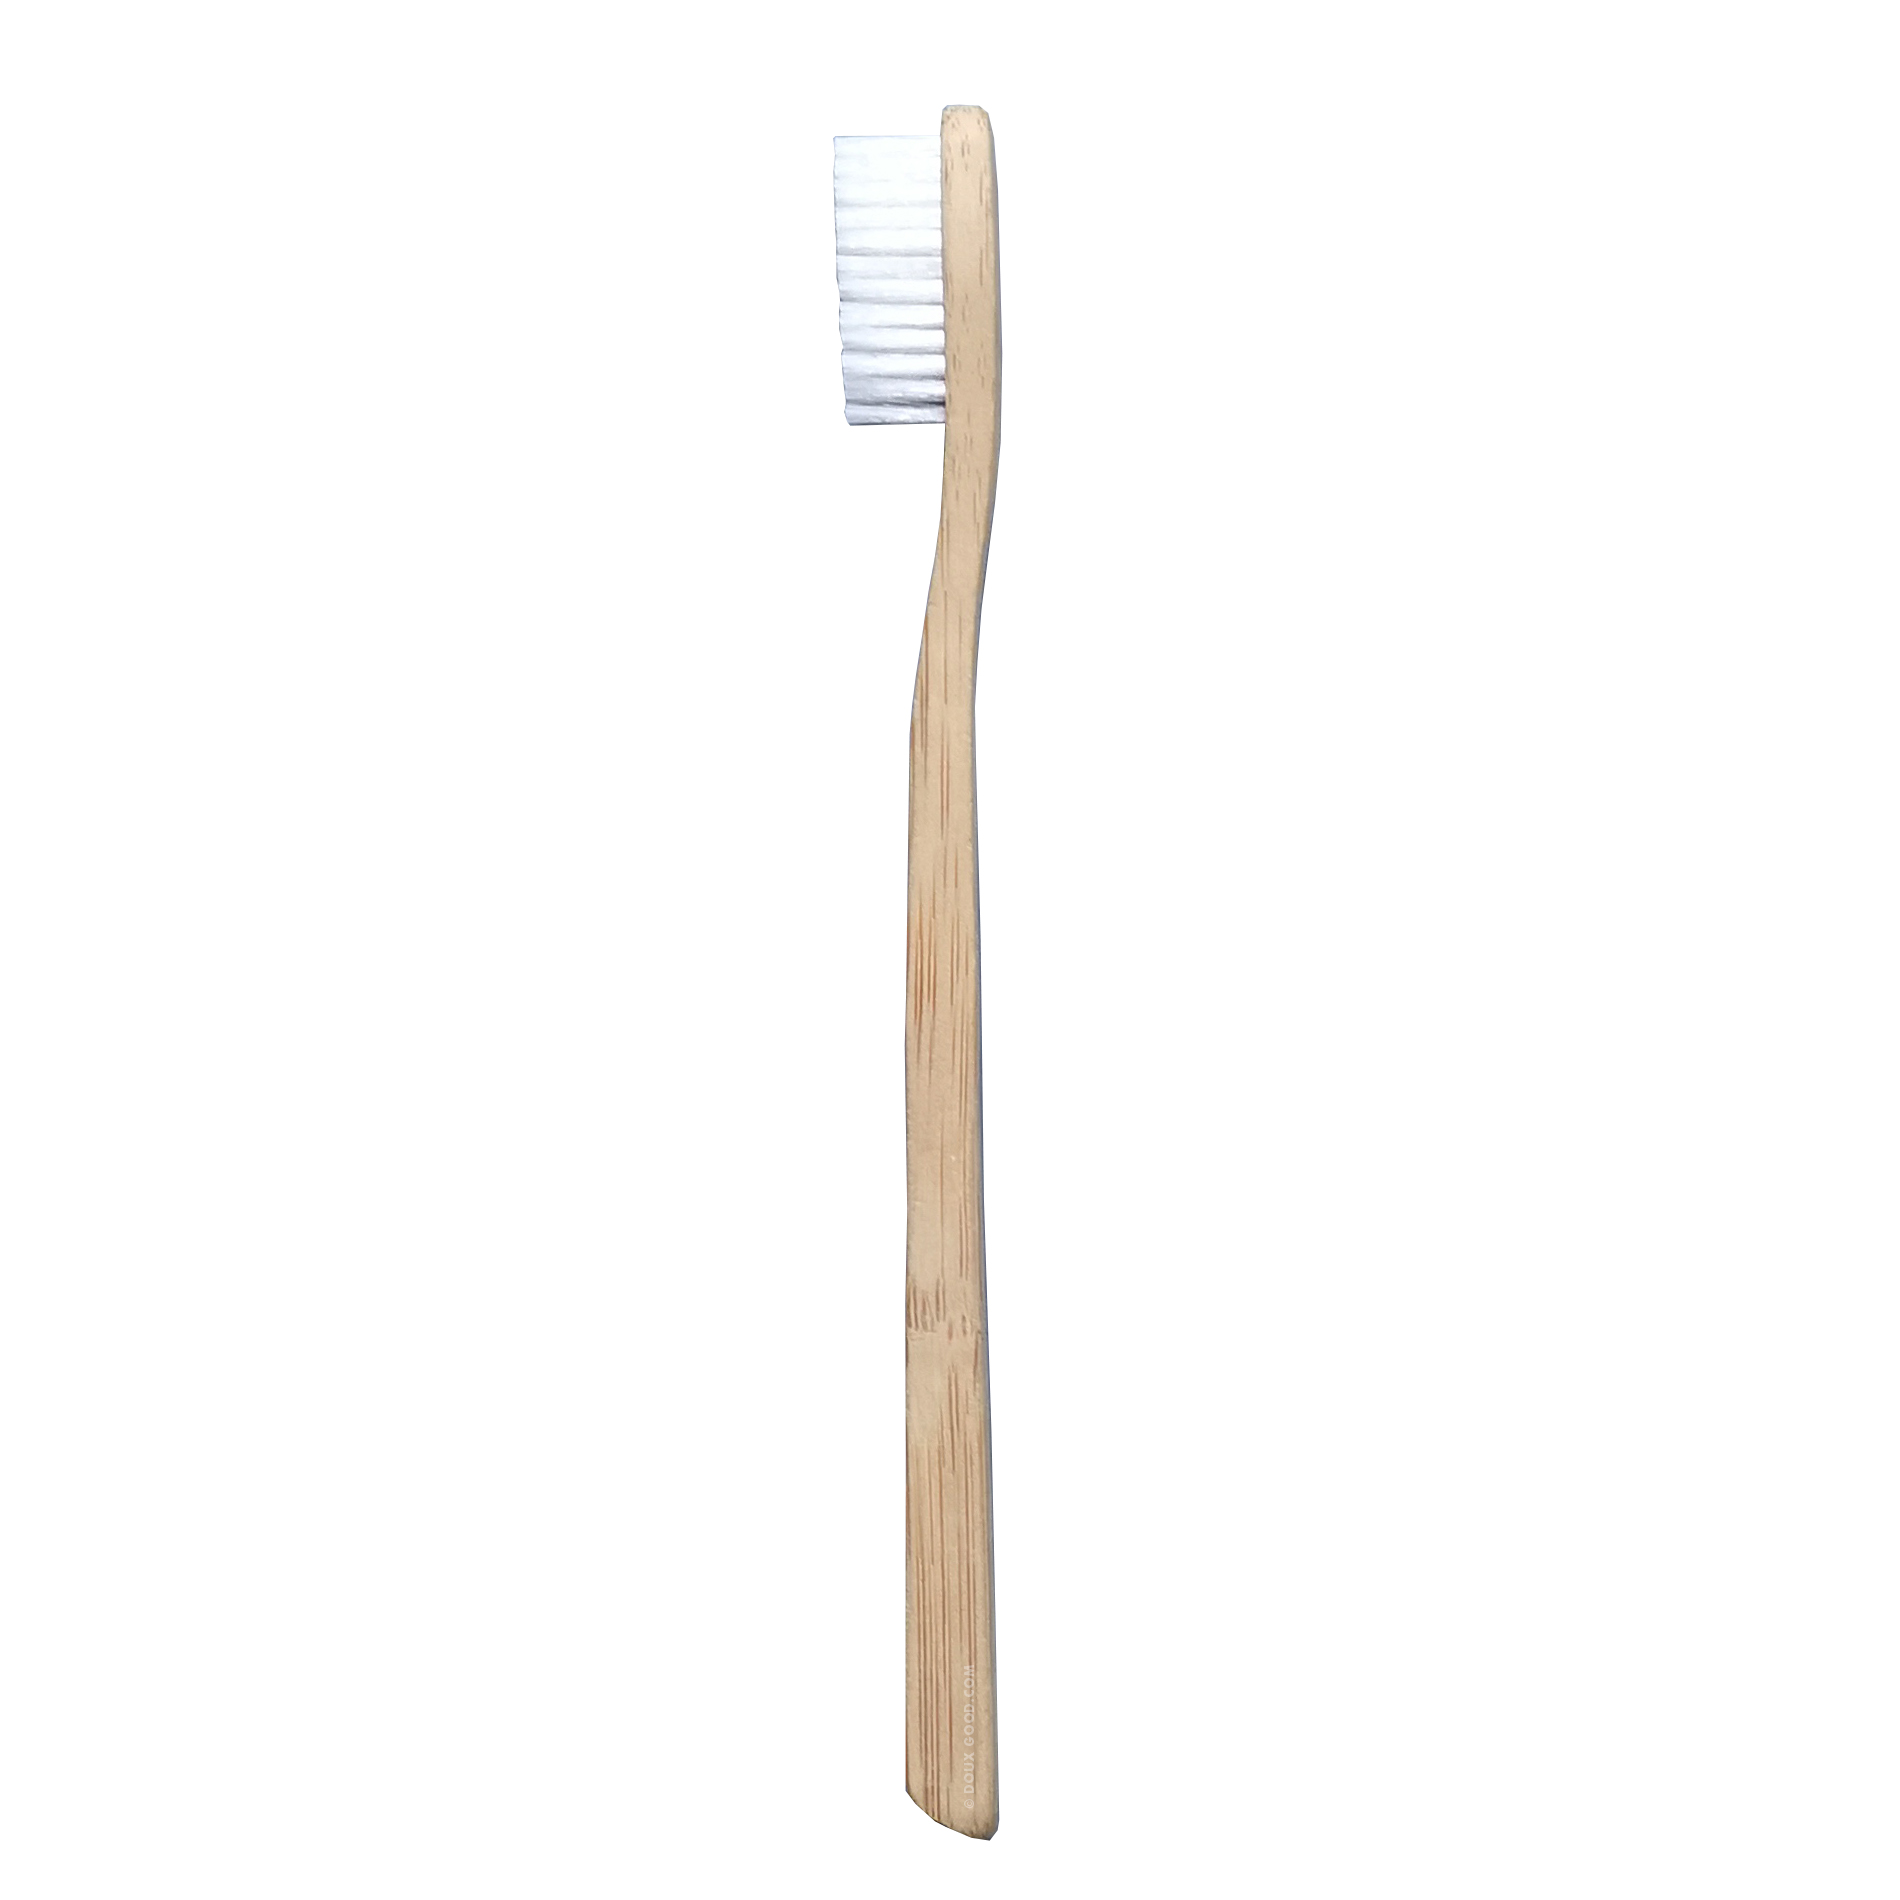 My Boo Company - brosse à dents en bambou - Adulte souple - transparent